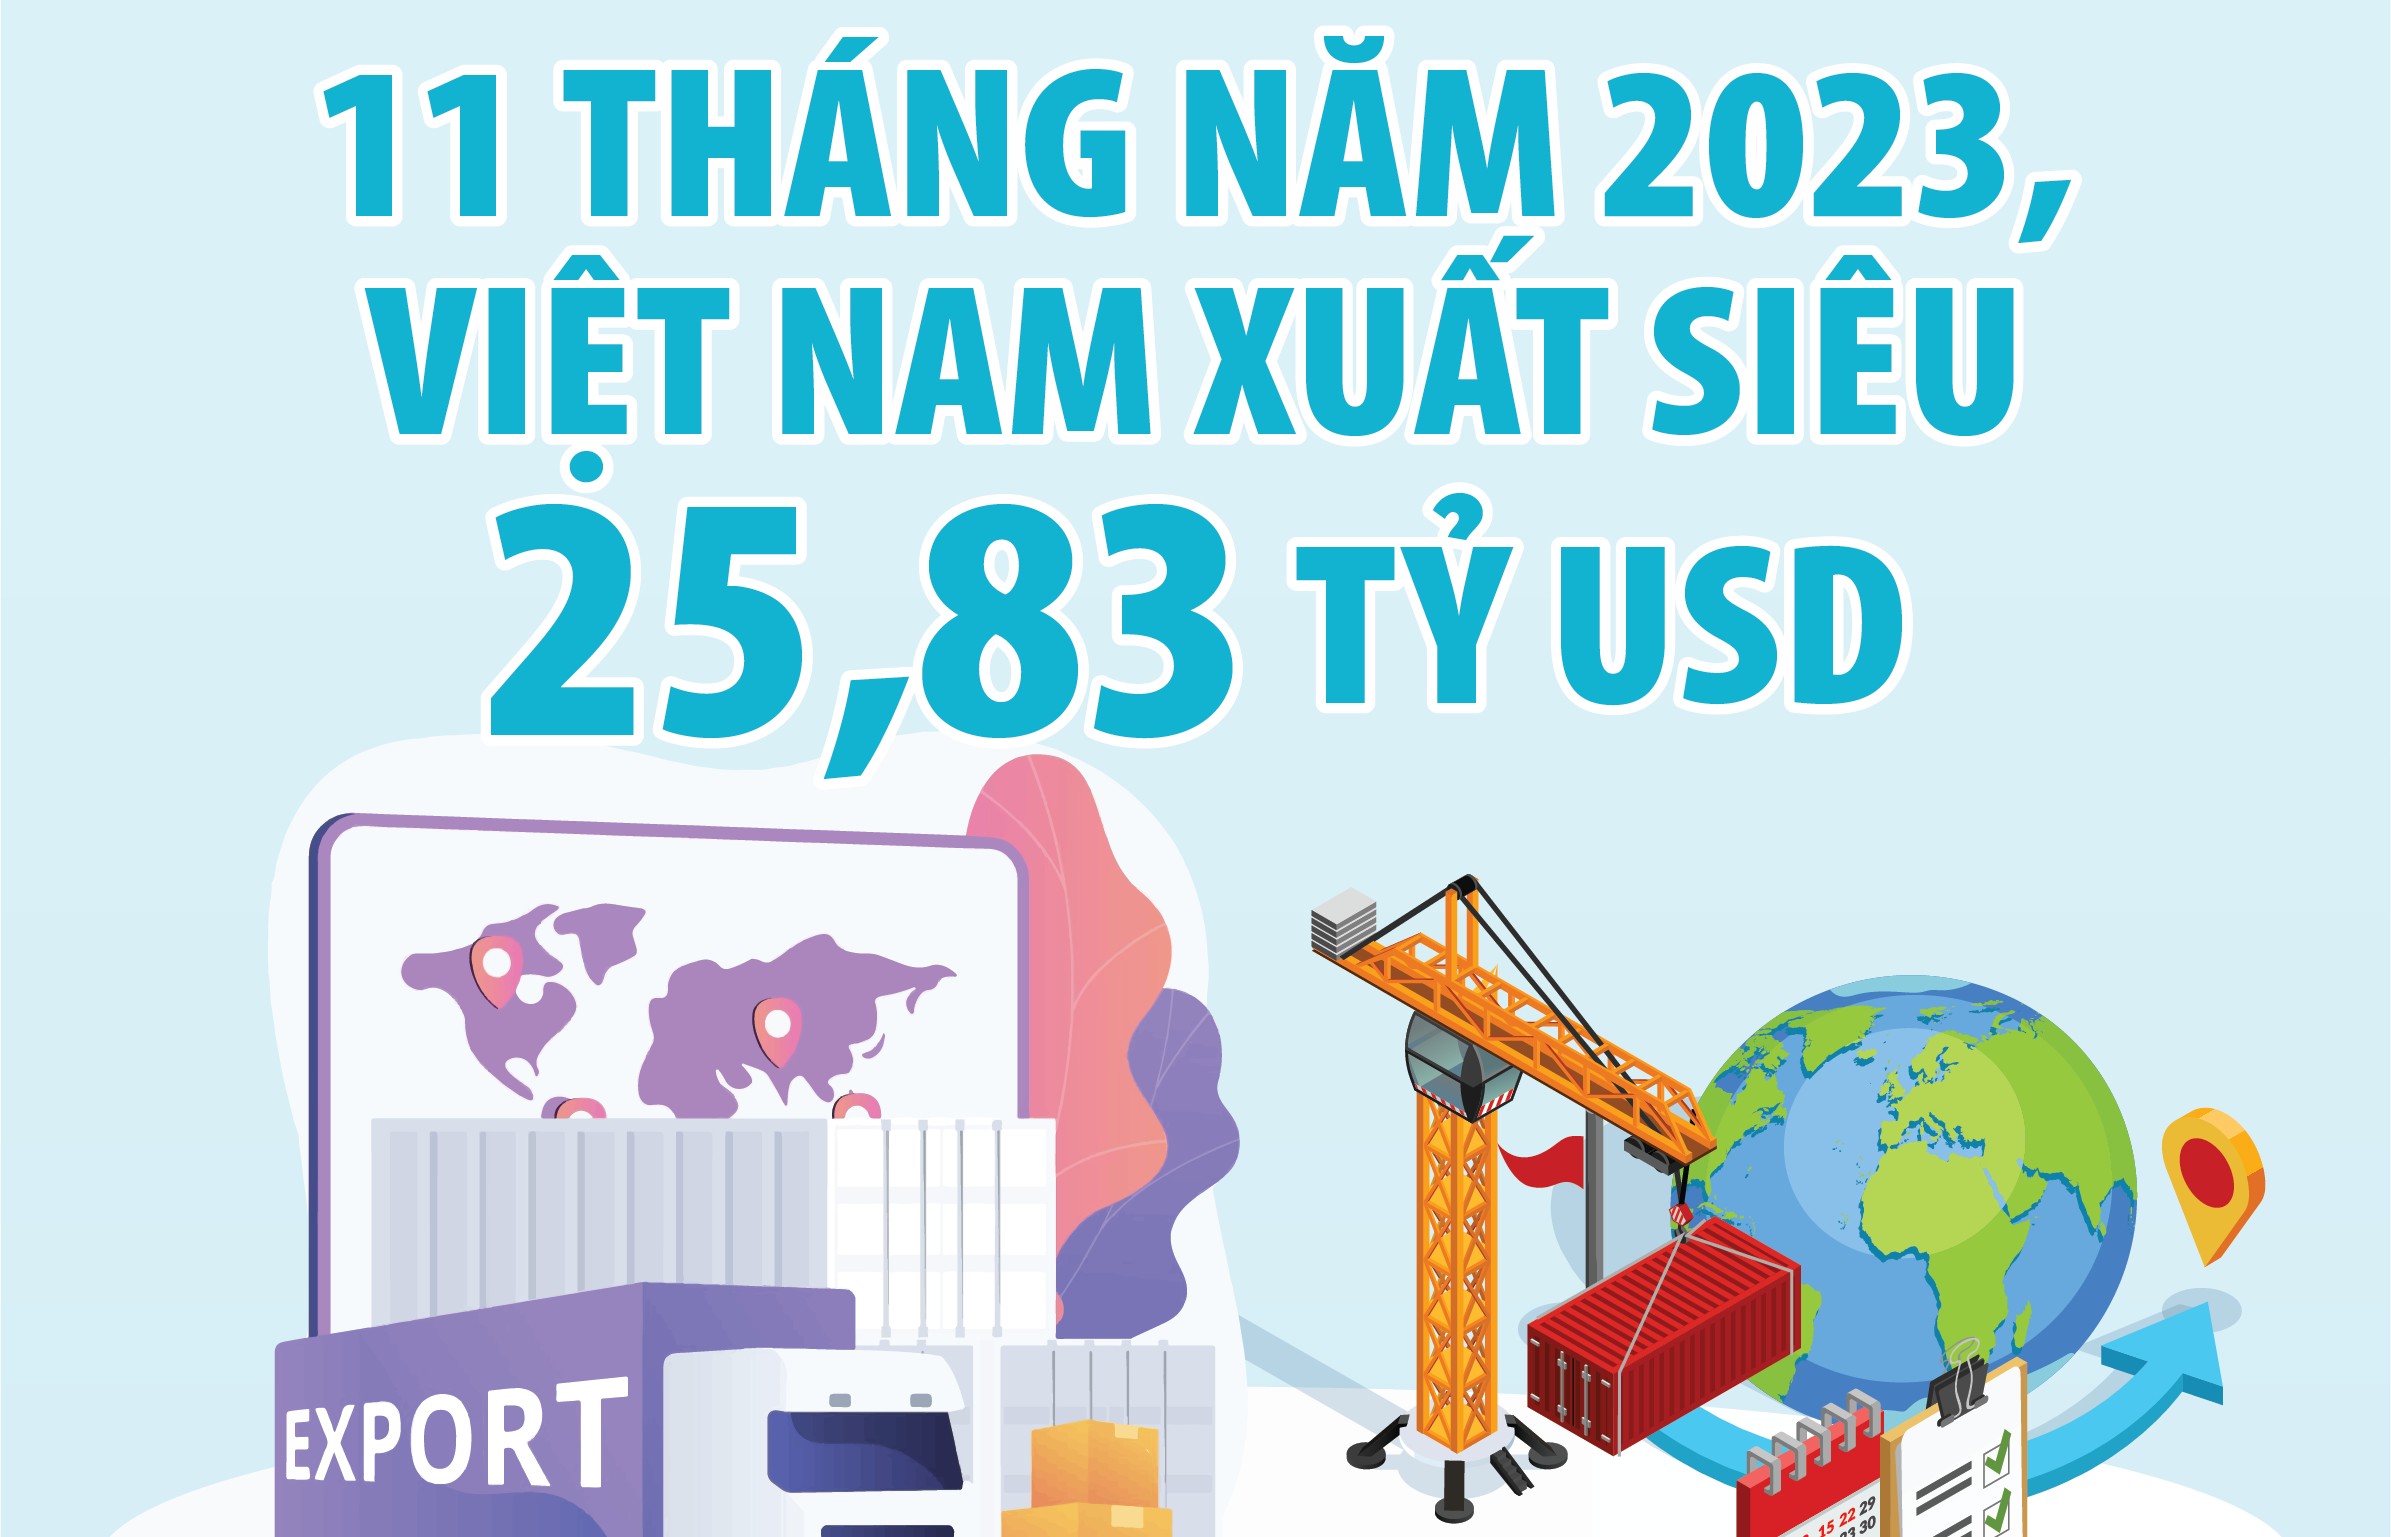 11 tháng năm 2023, Việt Nam xuất siêu 25,83 tỷ USD